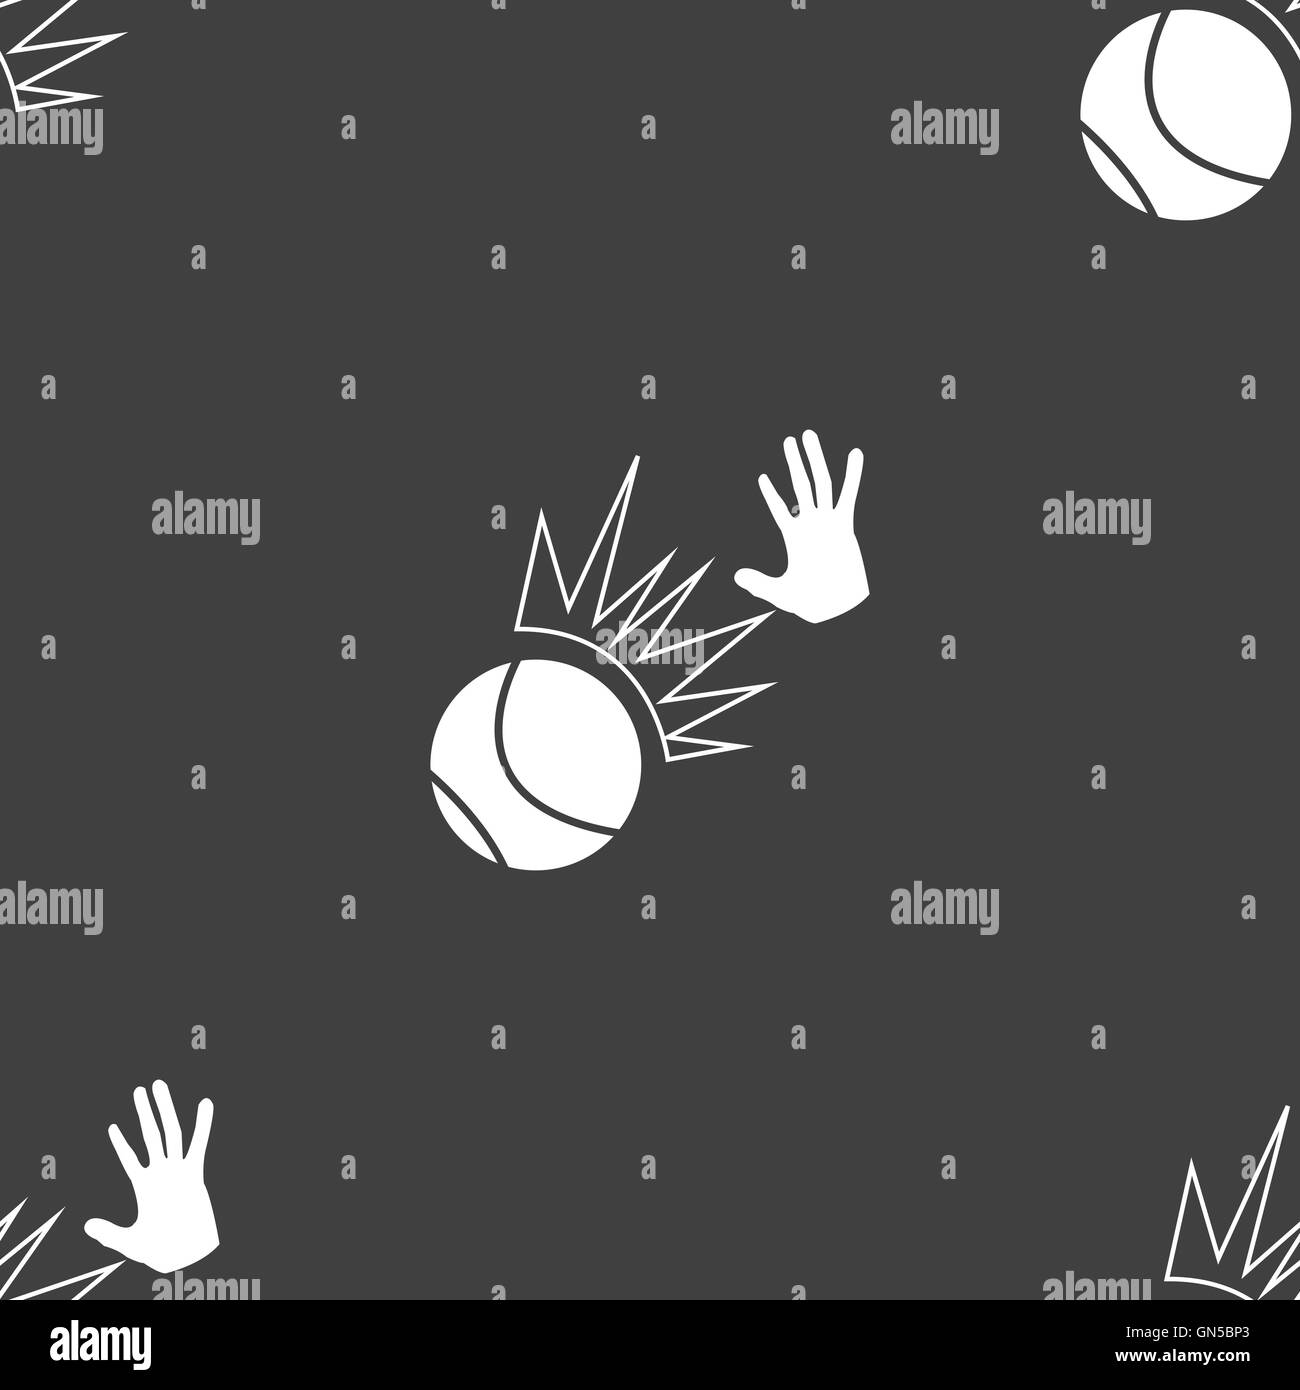 Basketball-Ikone Zeichen. Nahtlose Muster auf einem grauen Hintergrund. Vektor Stock Vektor